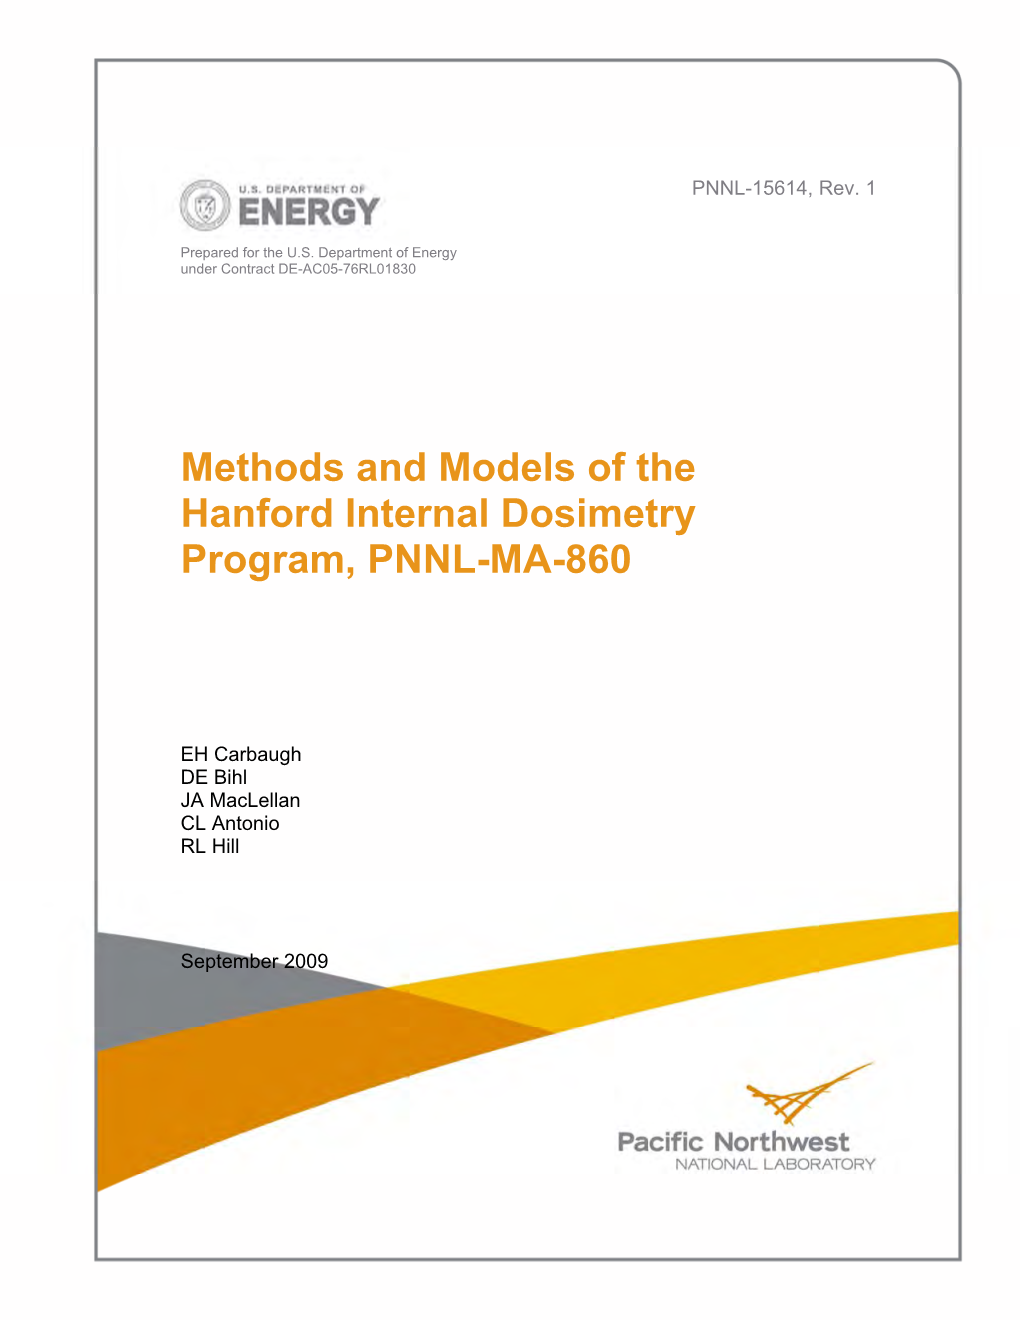 Methods and Models of the Hanford Internal Dosimetry Program, PNNL-MA-860